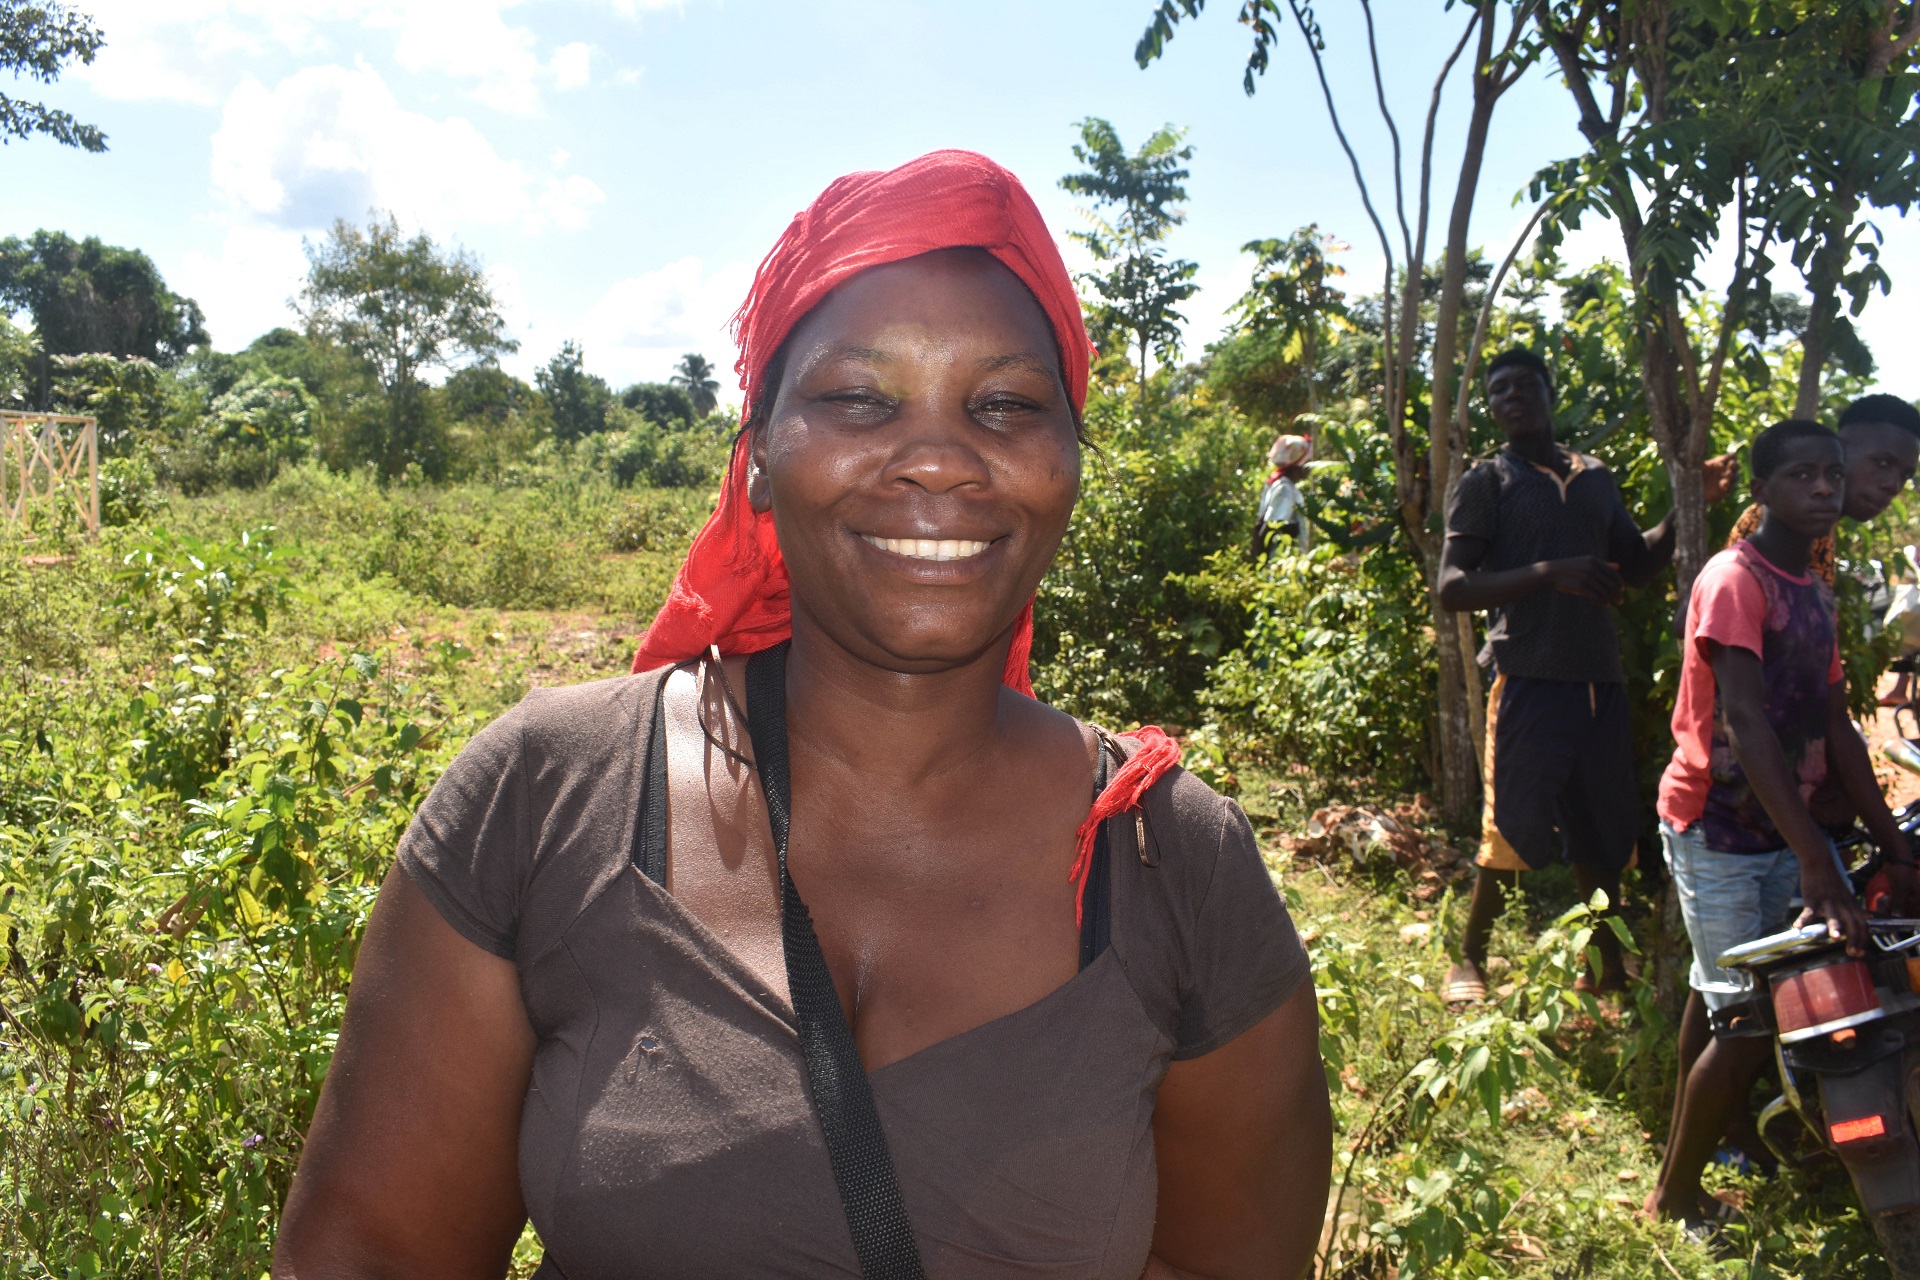 Nach dem Erbeben auf Haiti steht eine Frau mit einem roten Kopftuch lächelnd vor Palmen und Büschen.